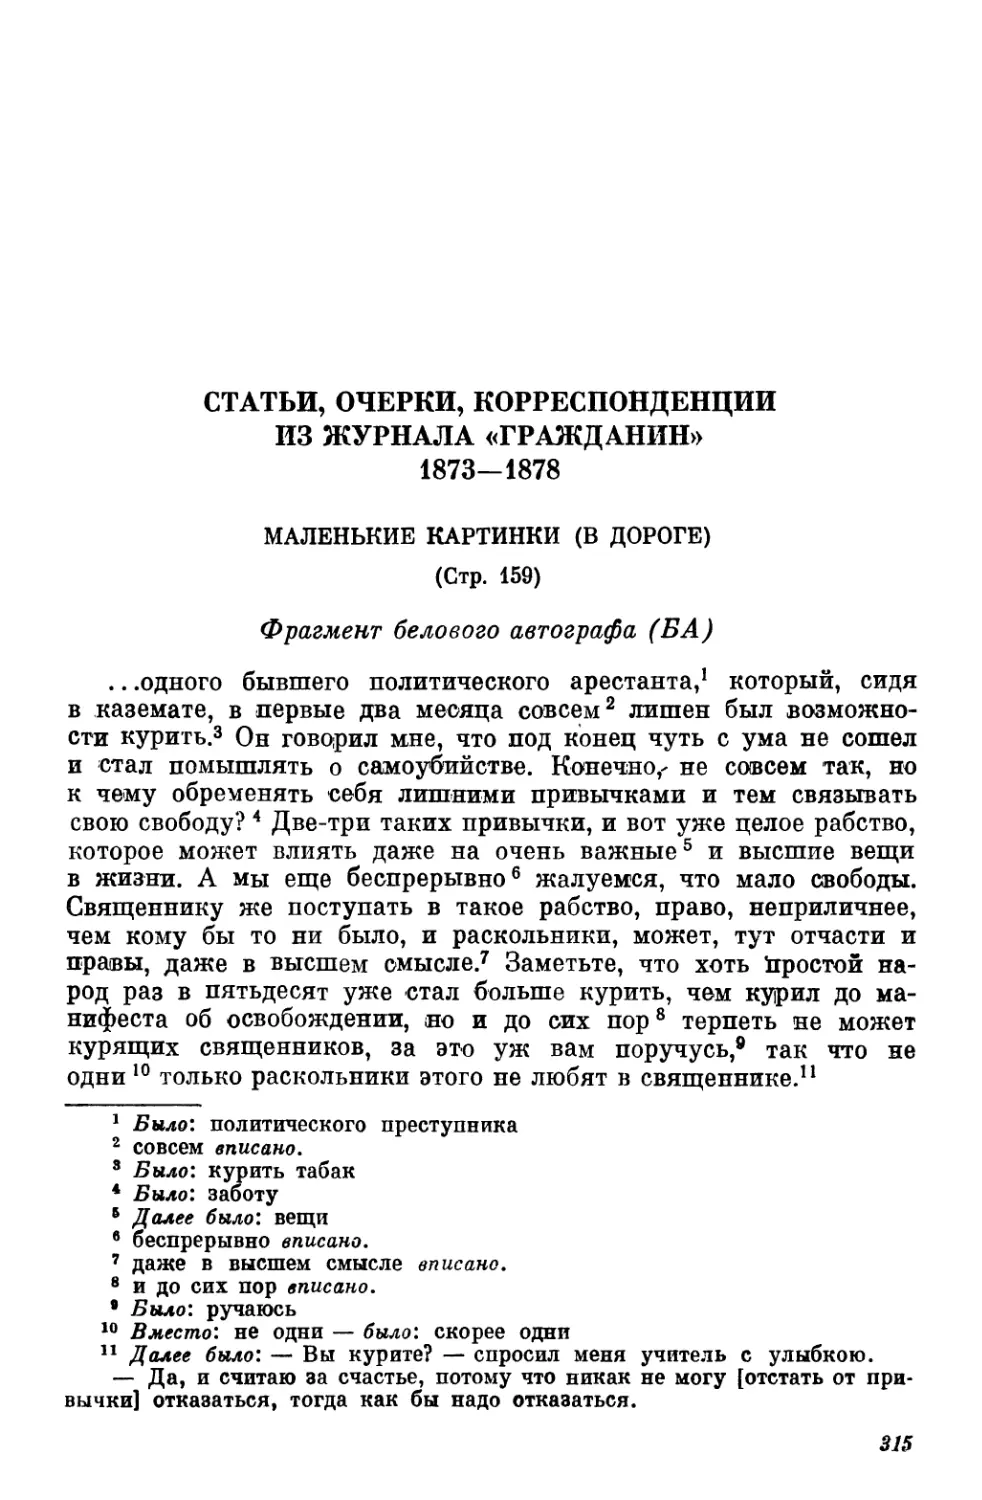 Статьи, очерки, корреспонденции из журнала «Гражданин». 1873—1878